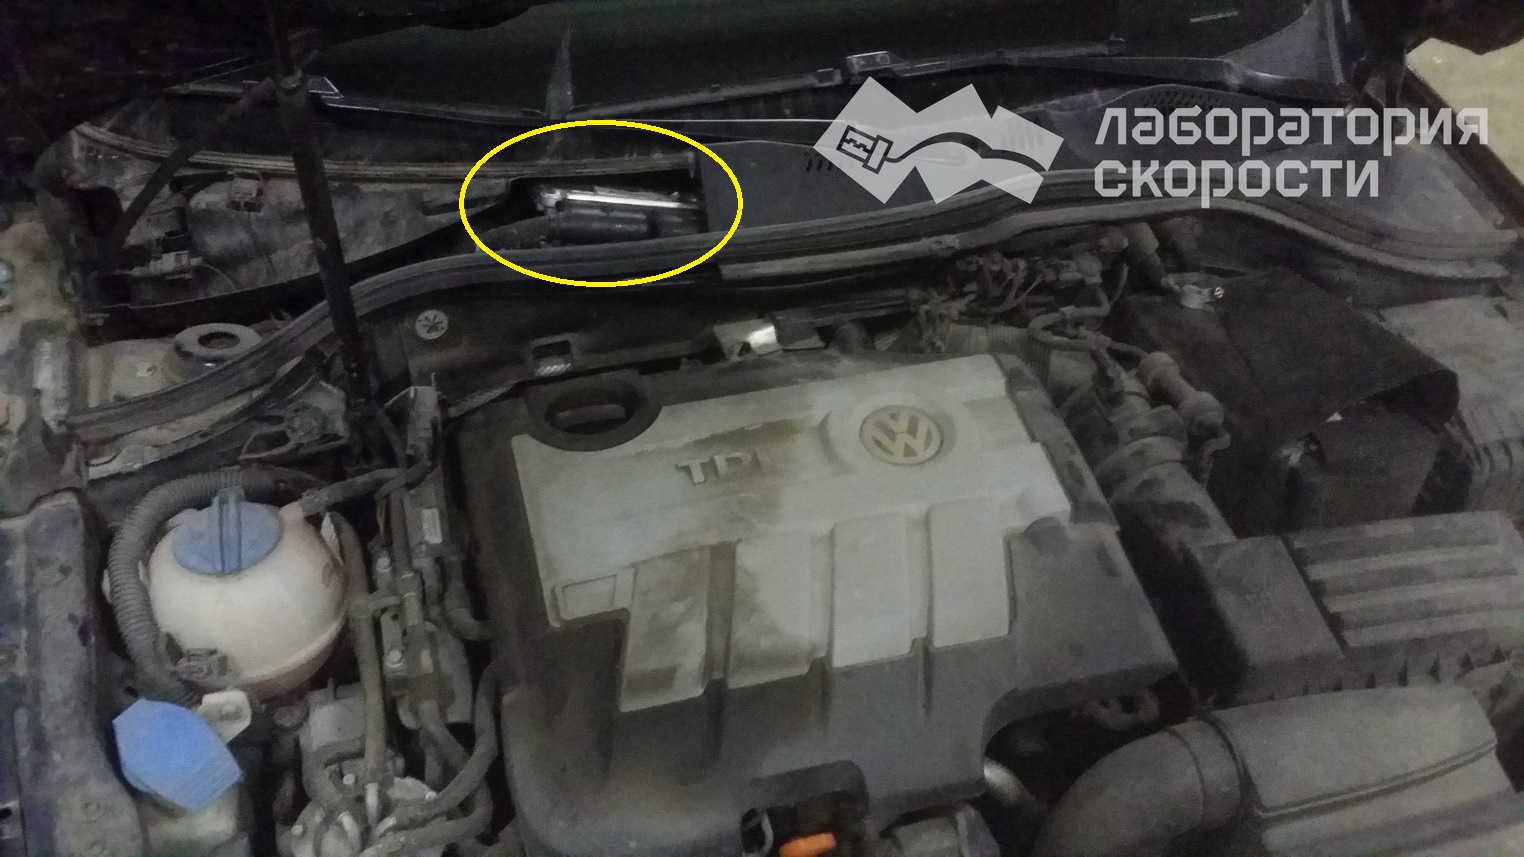 Чип-тюнинг VW Passat Blue TDI. Удаление/отключение AdBlue. Отчет